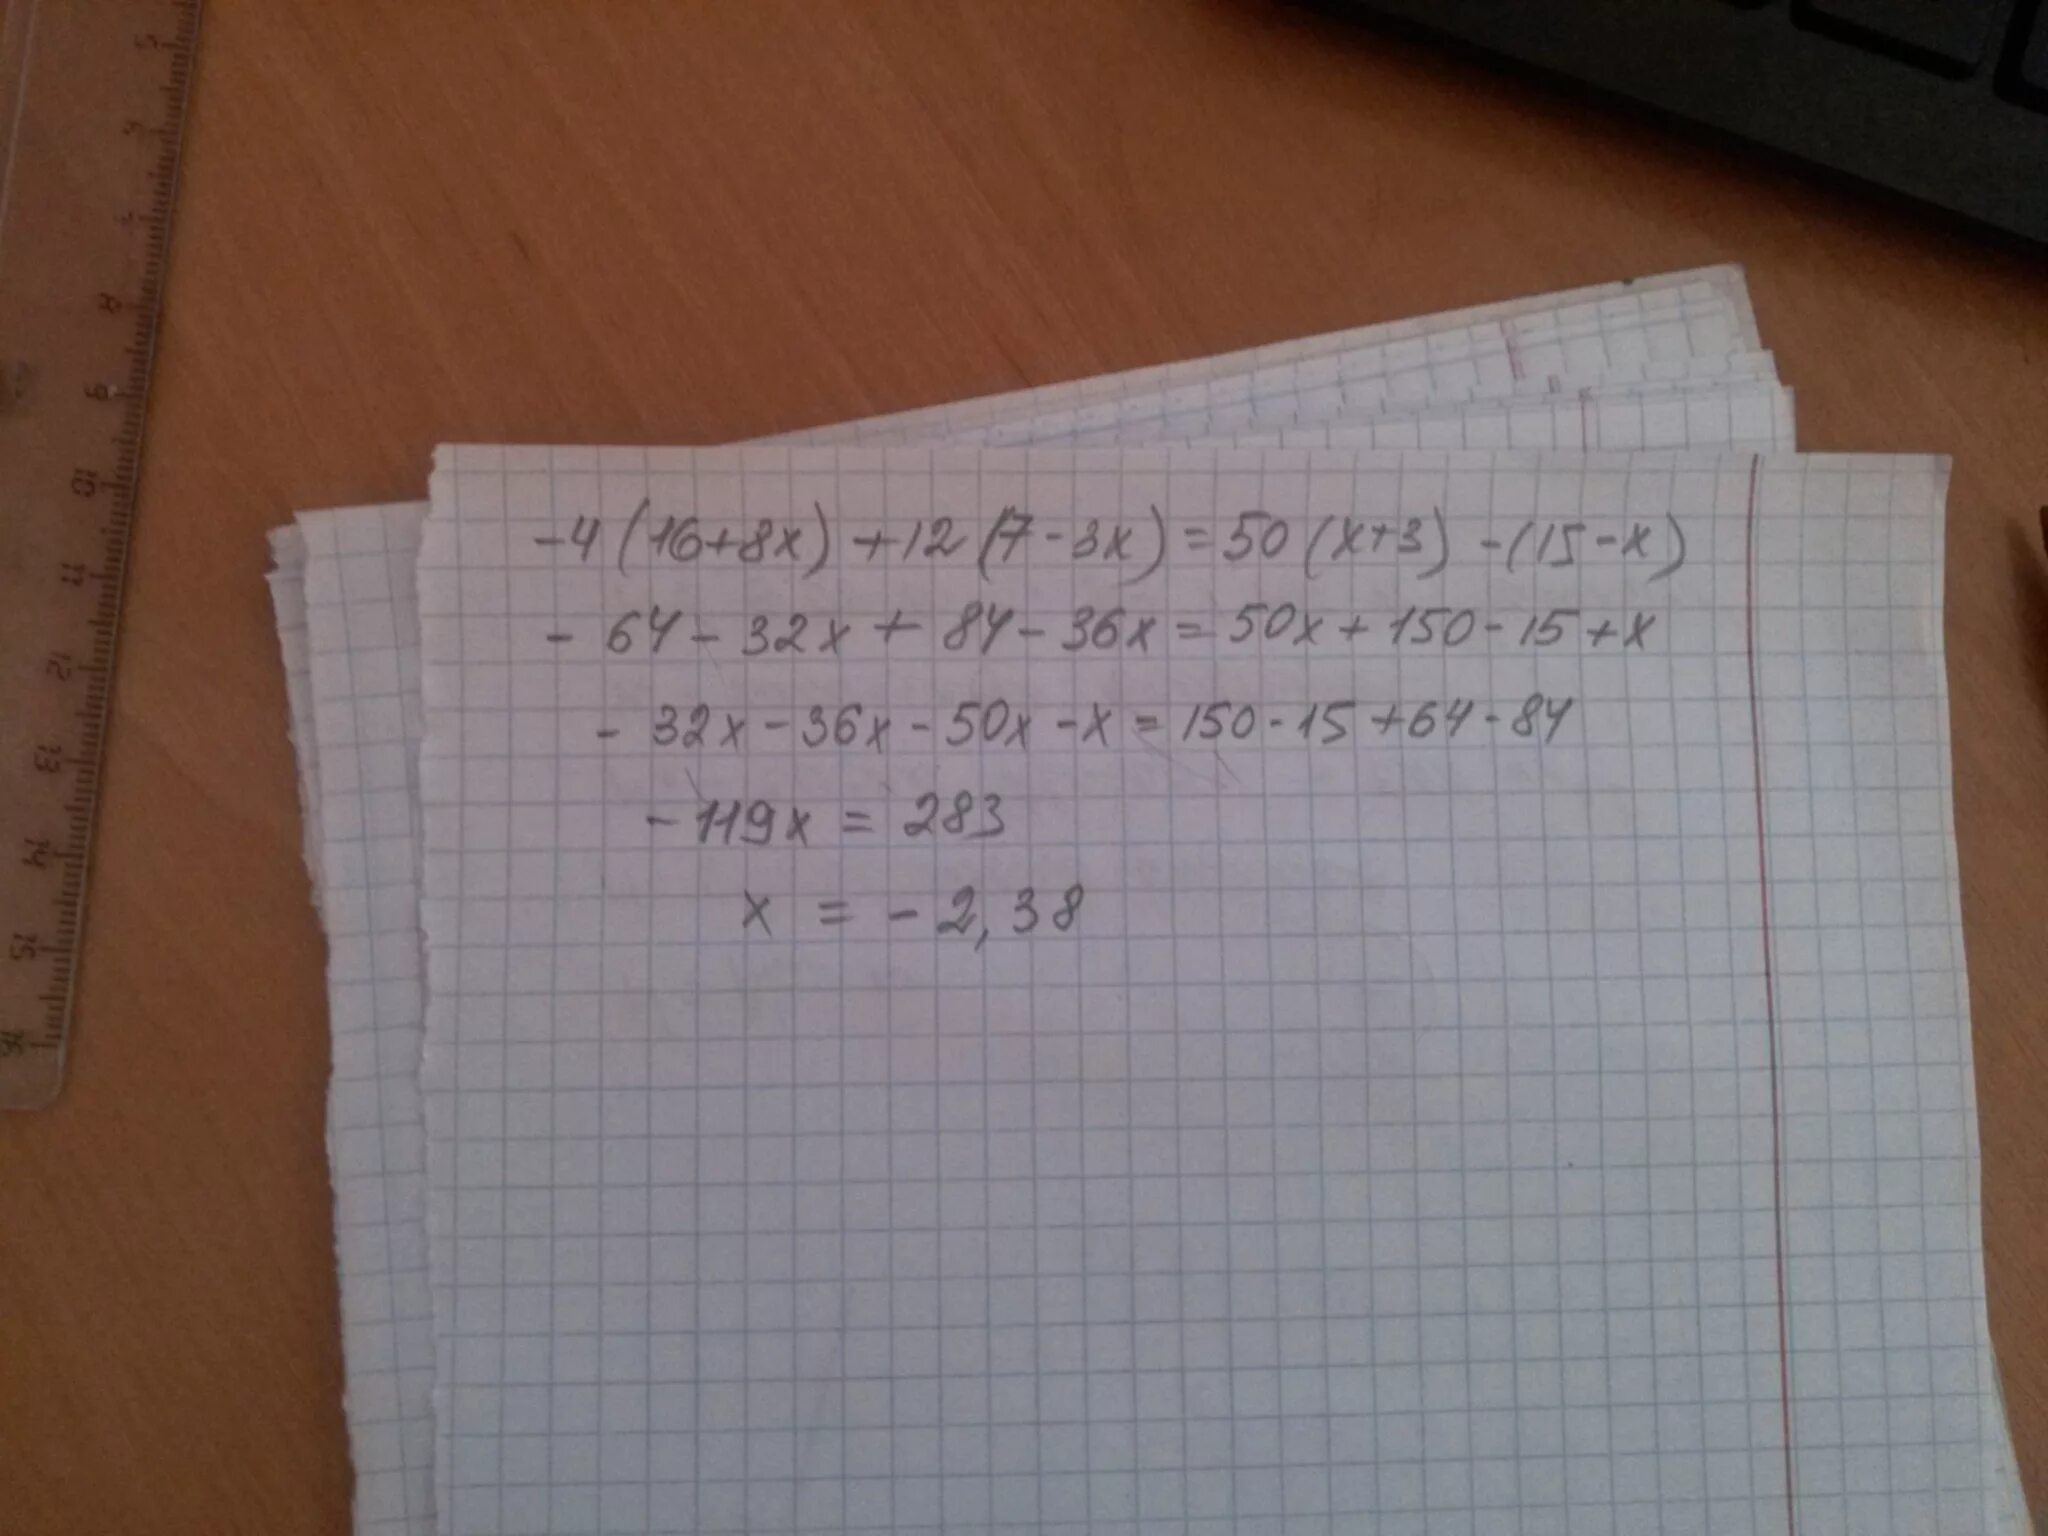 4 78 8 8. X-(50-X)=12. (50<X*X) ->(50>(X+1) (X+1)). 4x+7x=271,15. 6800-1648:8+78х4 =.